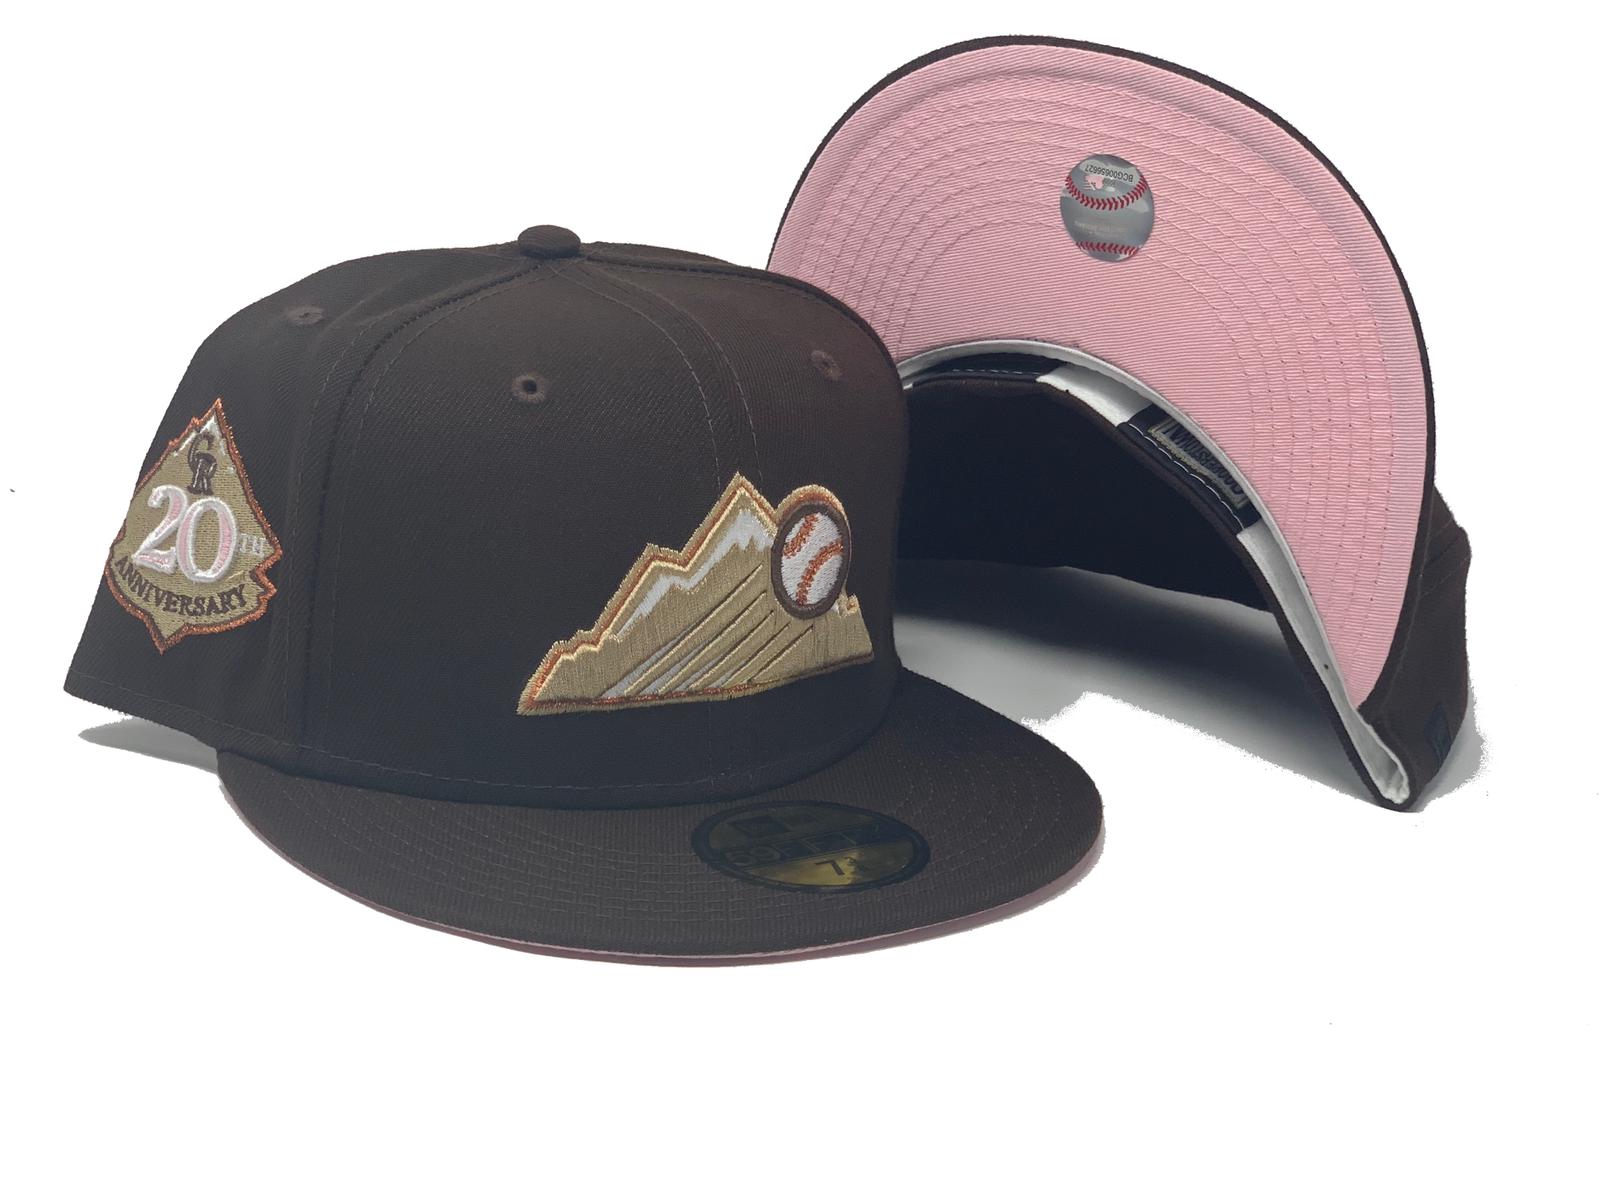 Fan Favorite MLB Mossy Oak Adjustable Hat, Colorado Rockies 